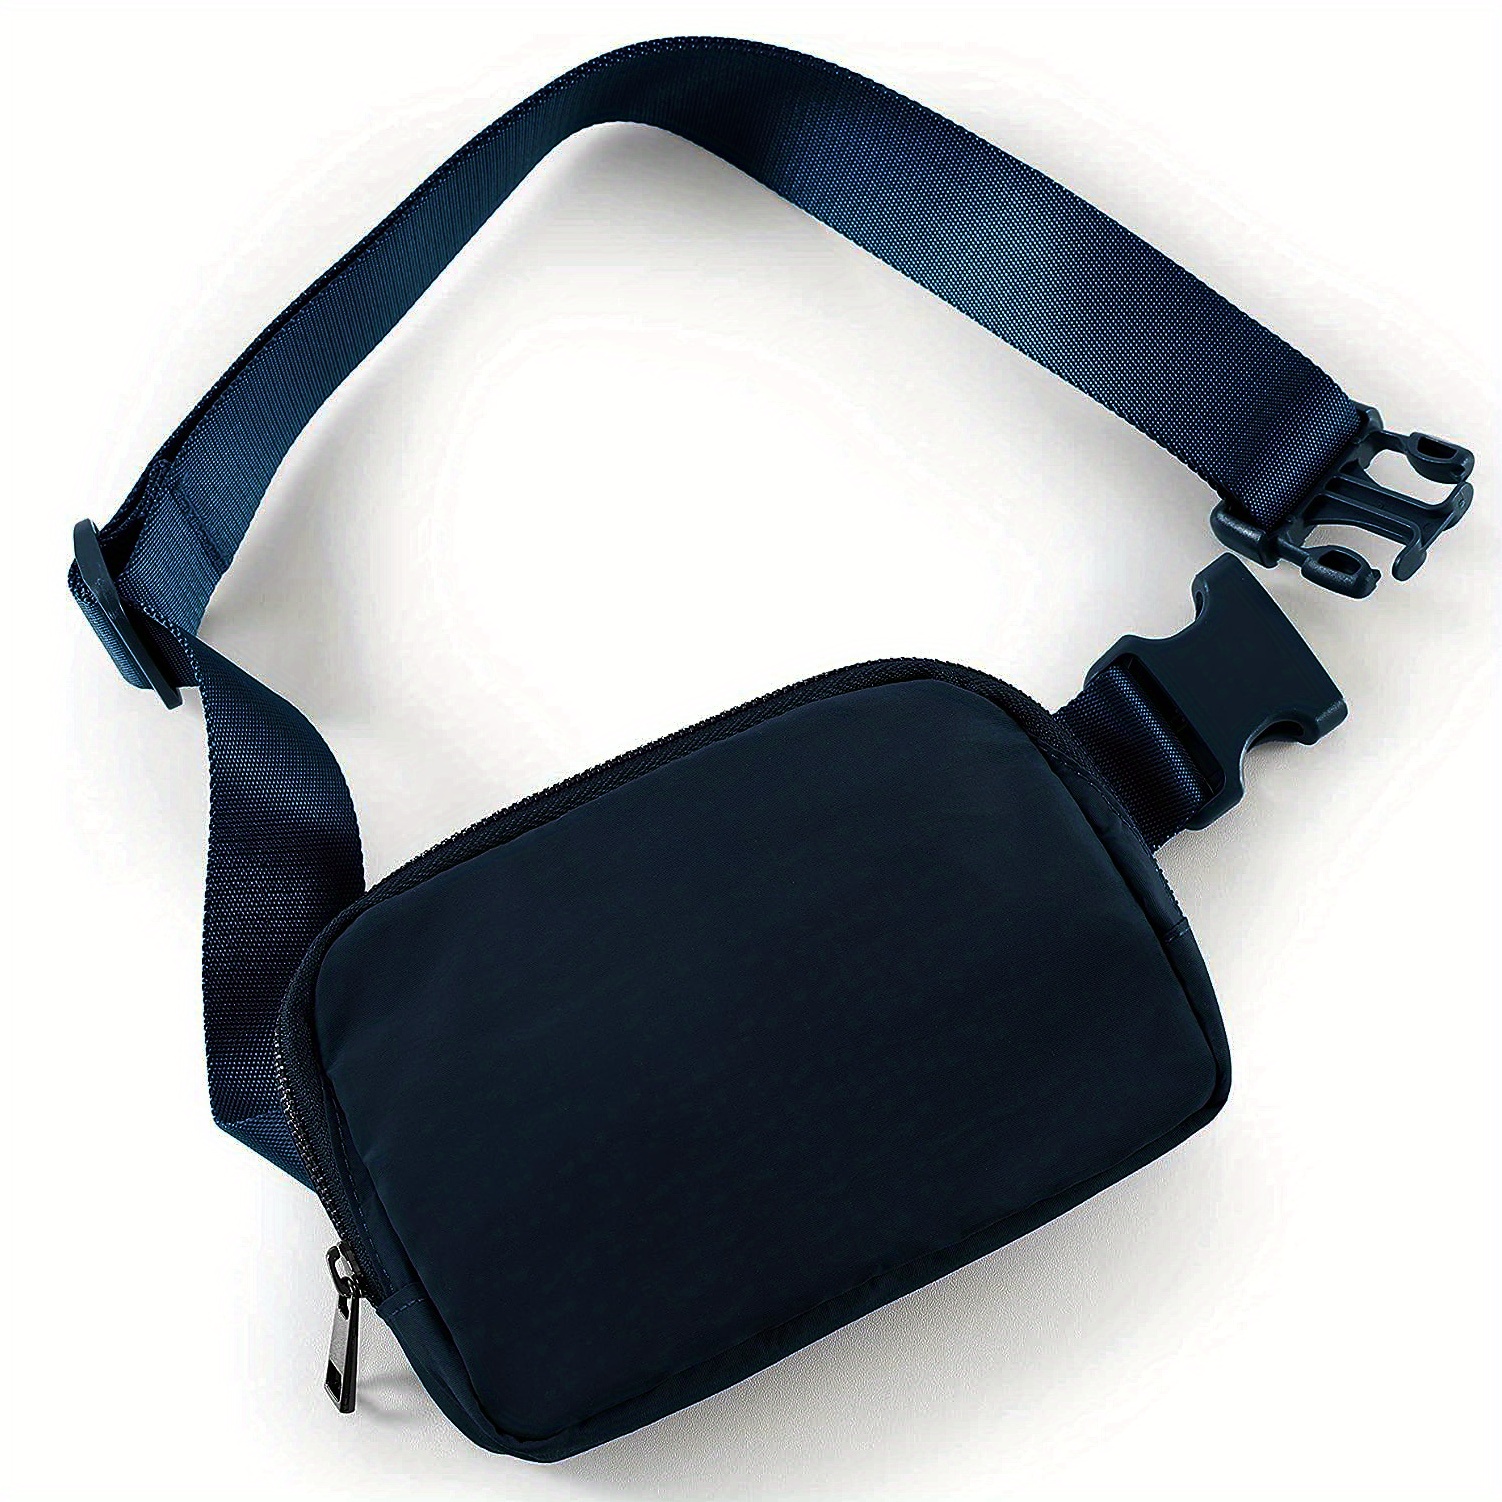 Women's Blue Belt Bags & Sling Bags